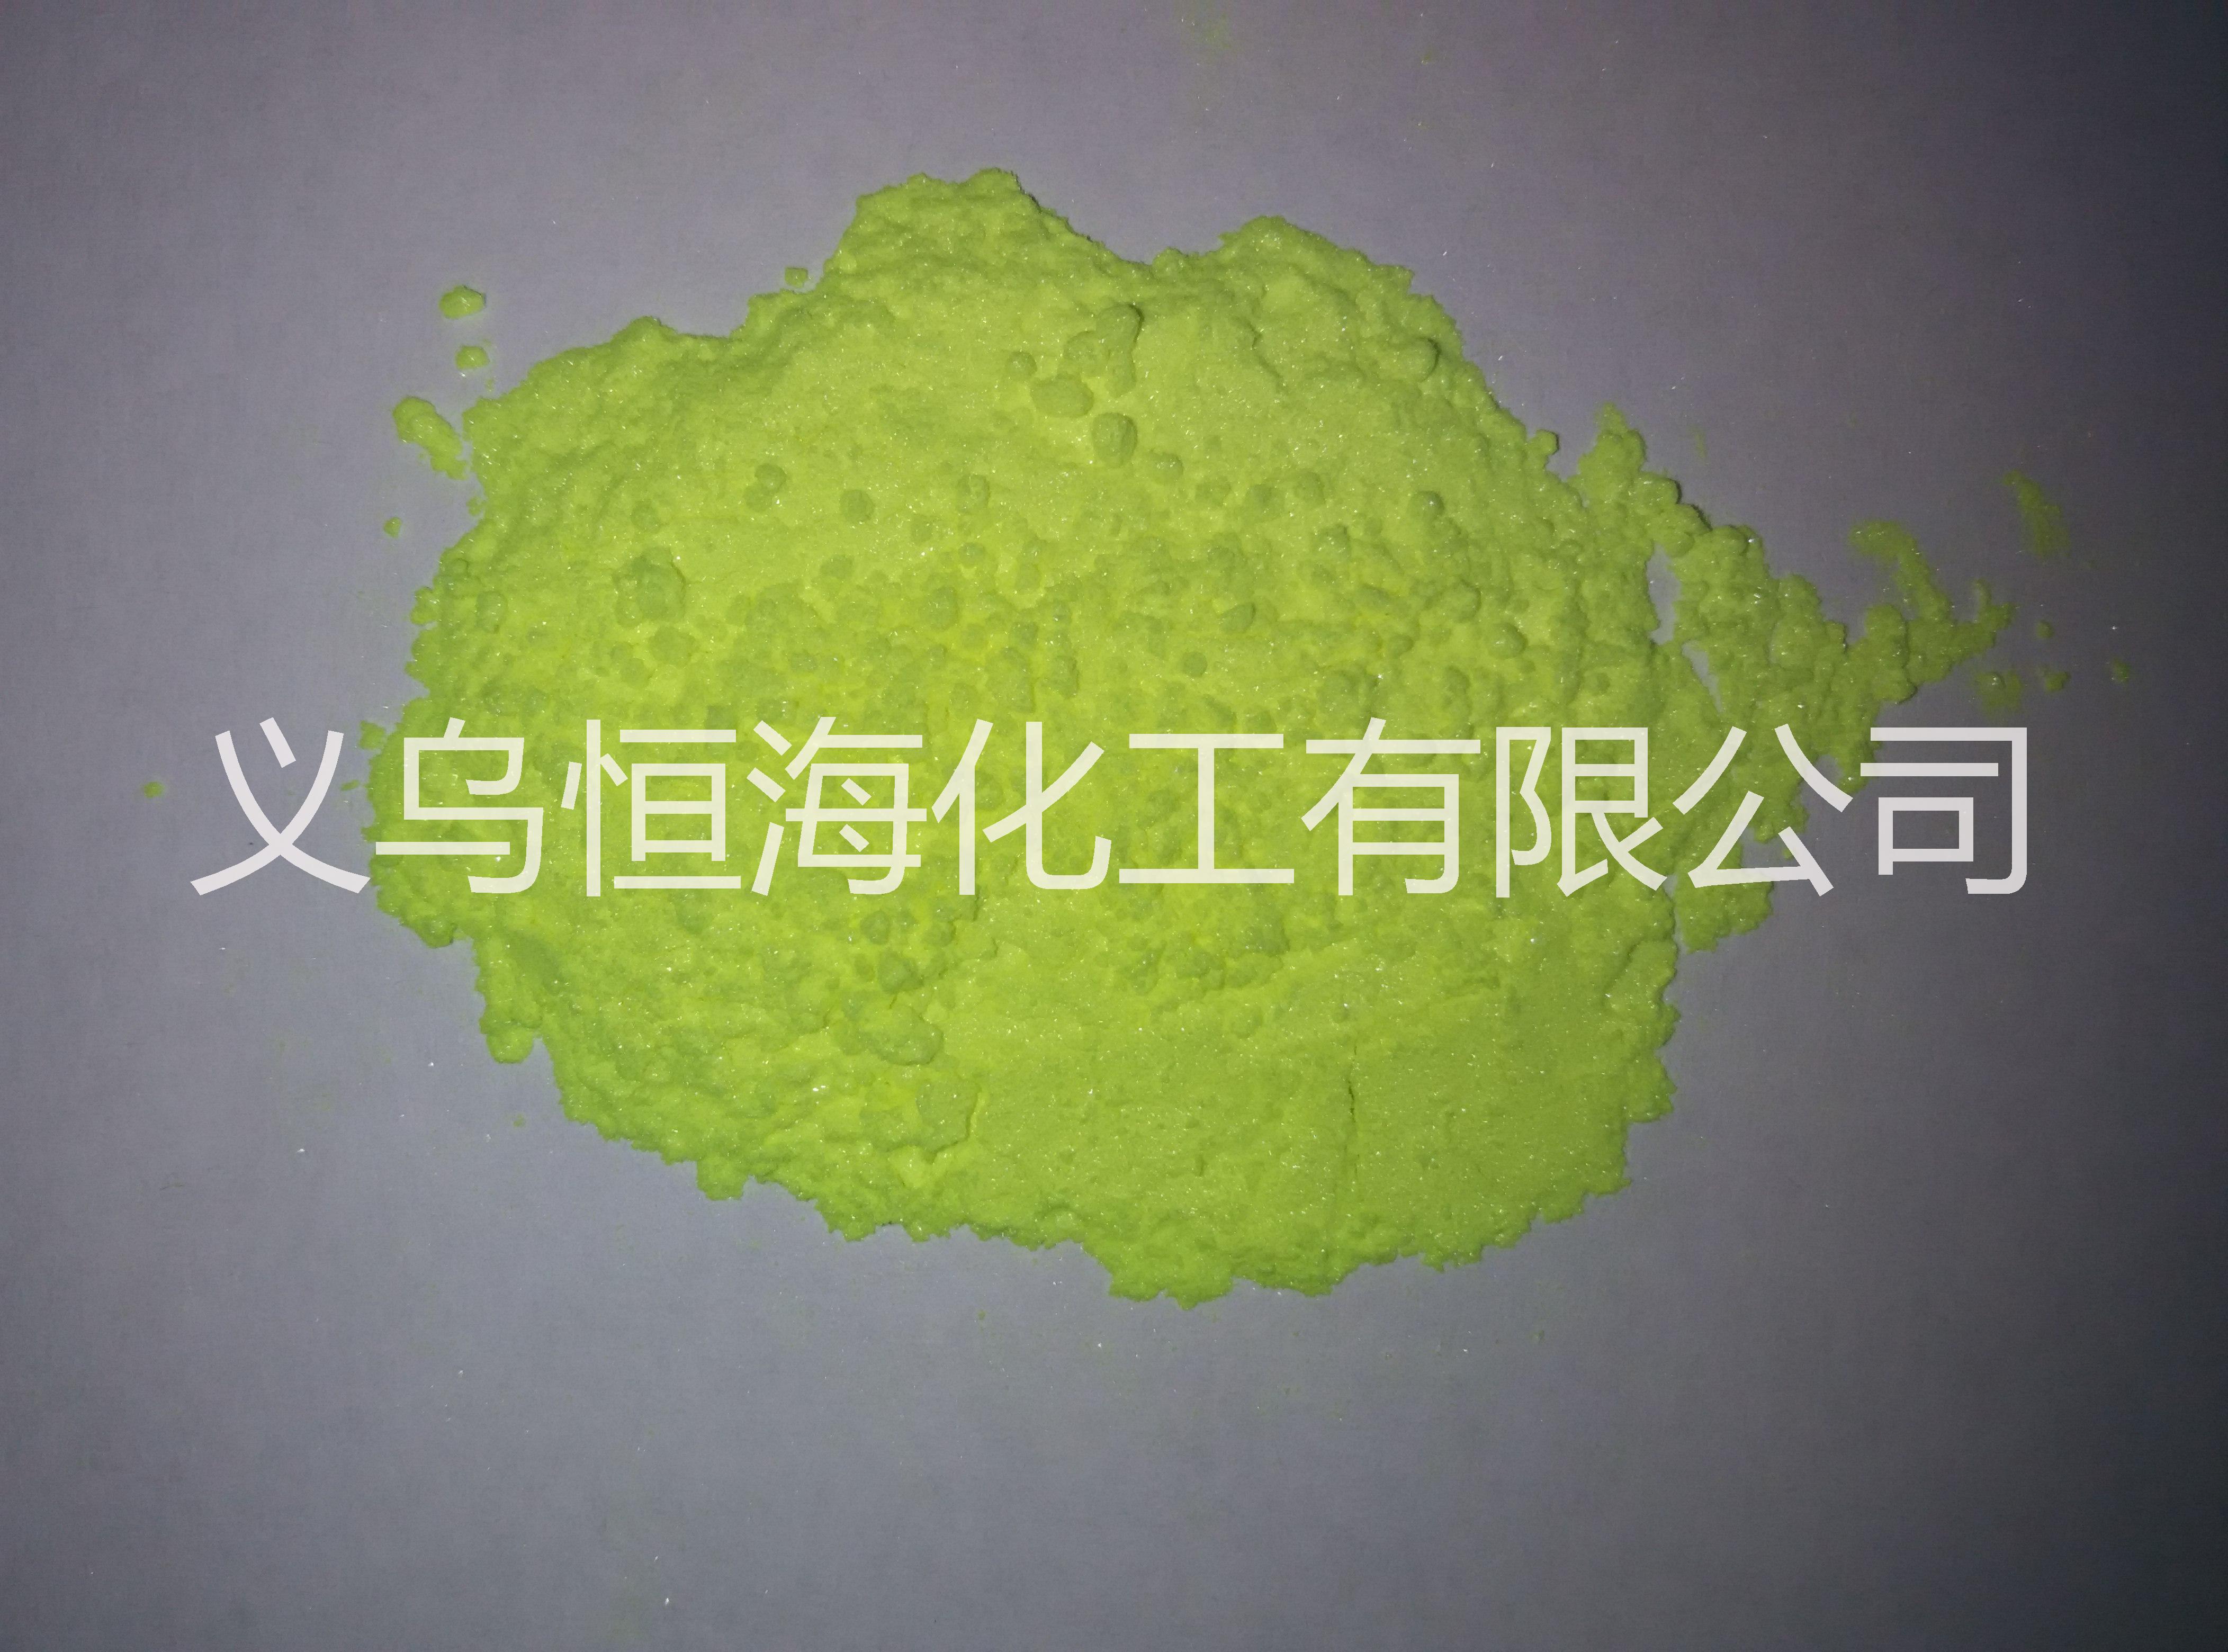 厂家直销荧光增白剂 OB-1 荧光增白剂 OB-1绿纯